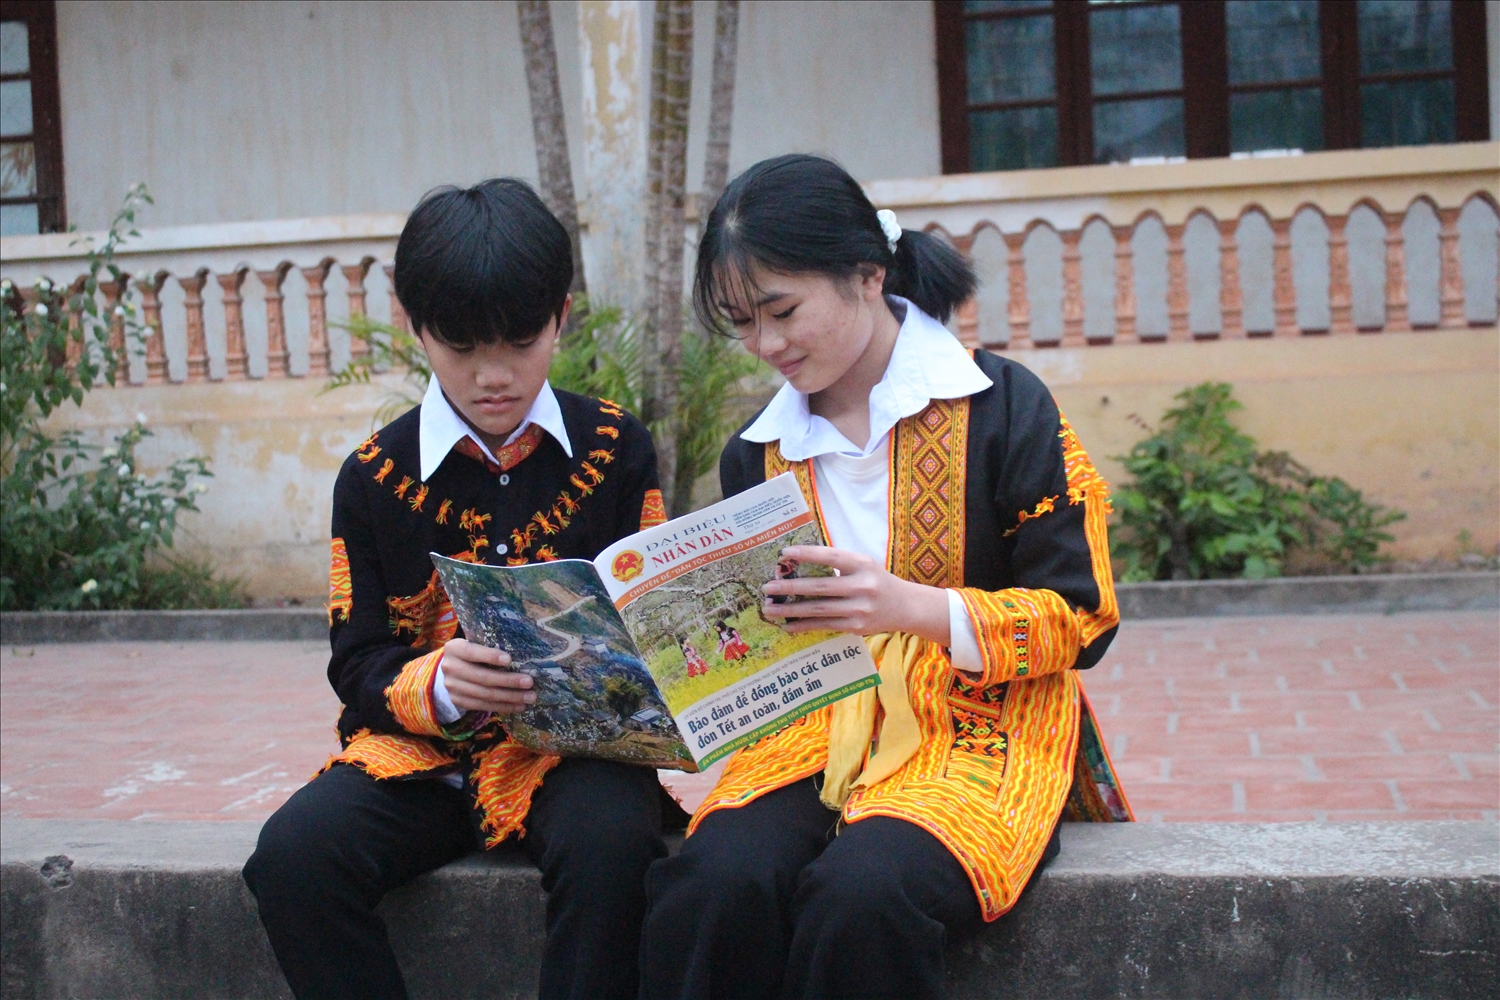 Thời gian qua, ngành giáo dục Bắc Giang chú trọng giáo dục đạo đức, lối sống, thực hành pháp luật... cho học sinh thông qua các hoạt động giáo dục